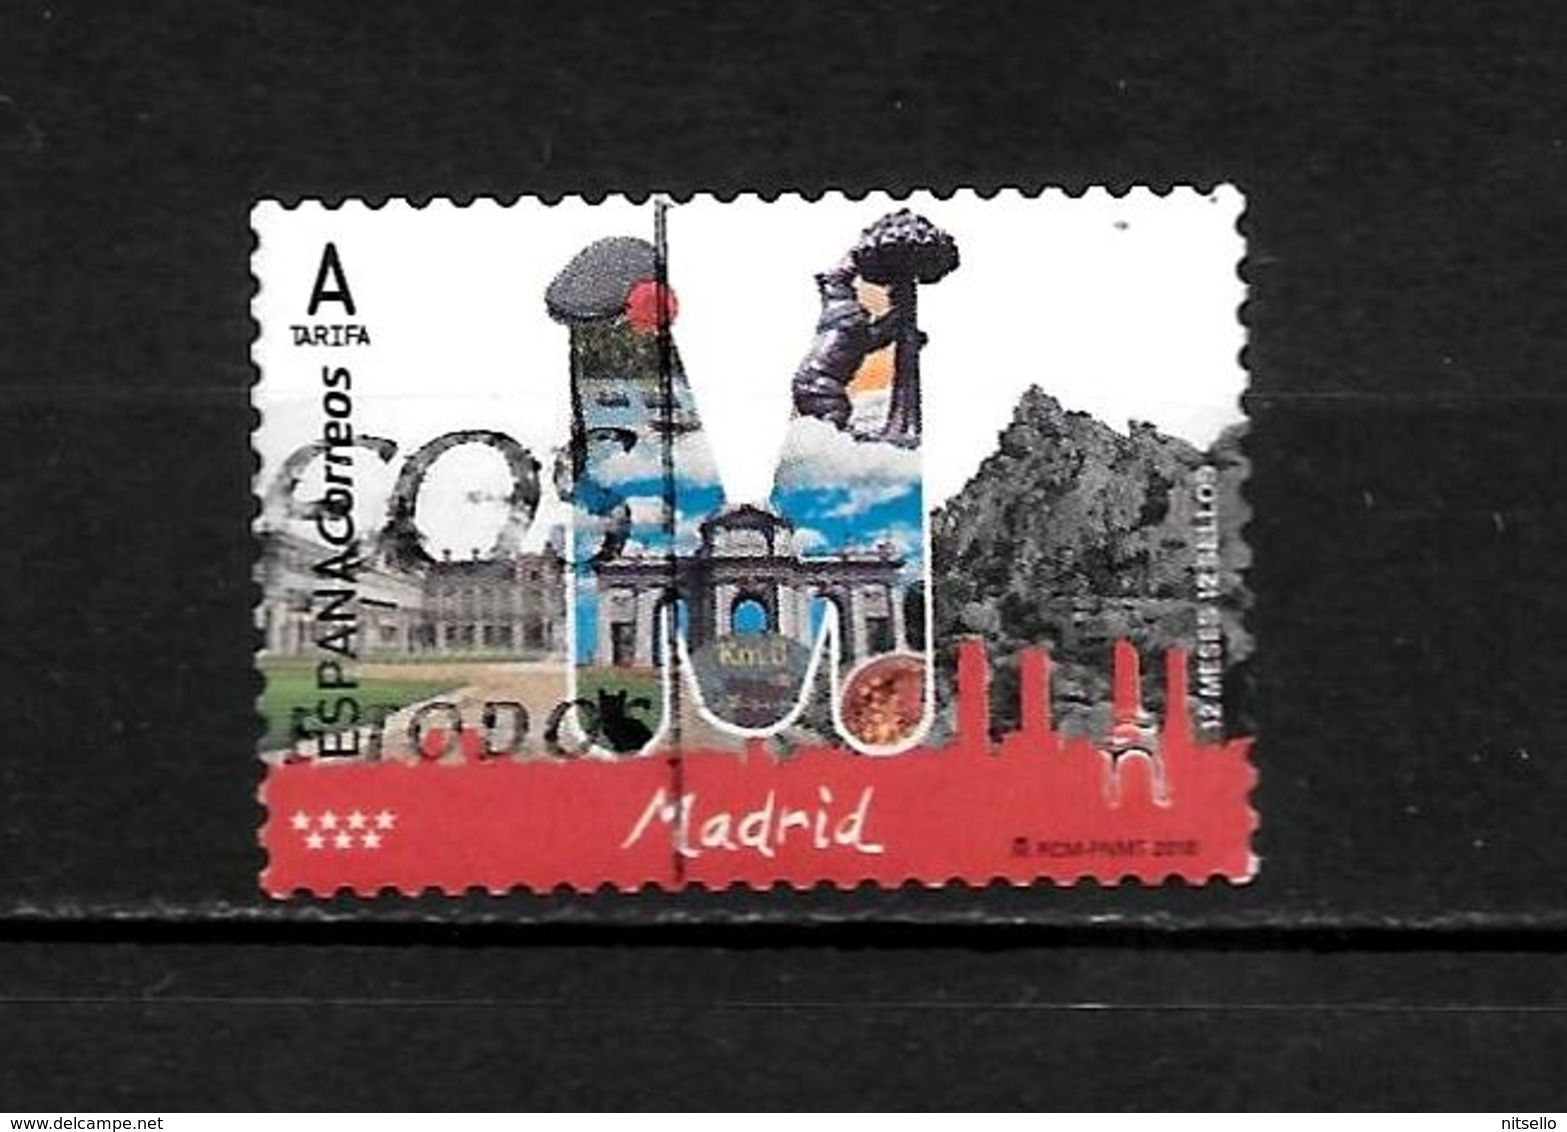 LOTE 2030 ///  ESPAÑA 2018  MADRID  ¡¡¡ OFERTA - LIQUIDATION !!! JE LIQUIDE !!! - Used Stamps